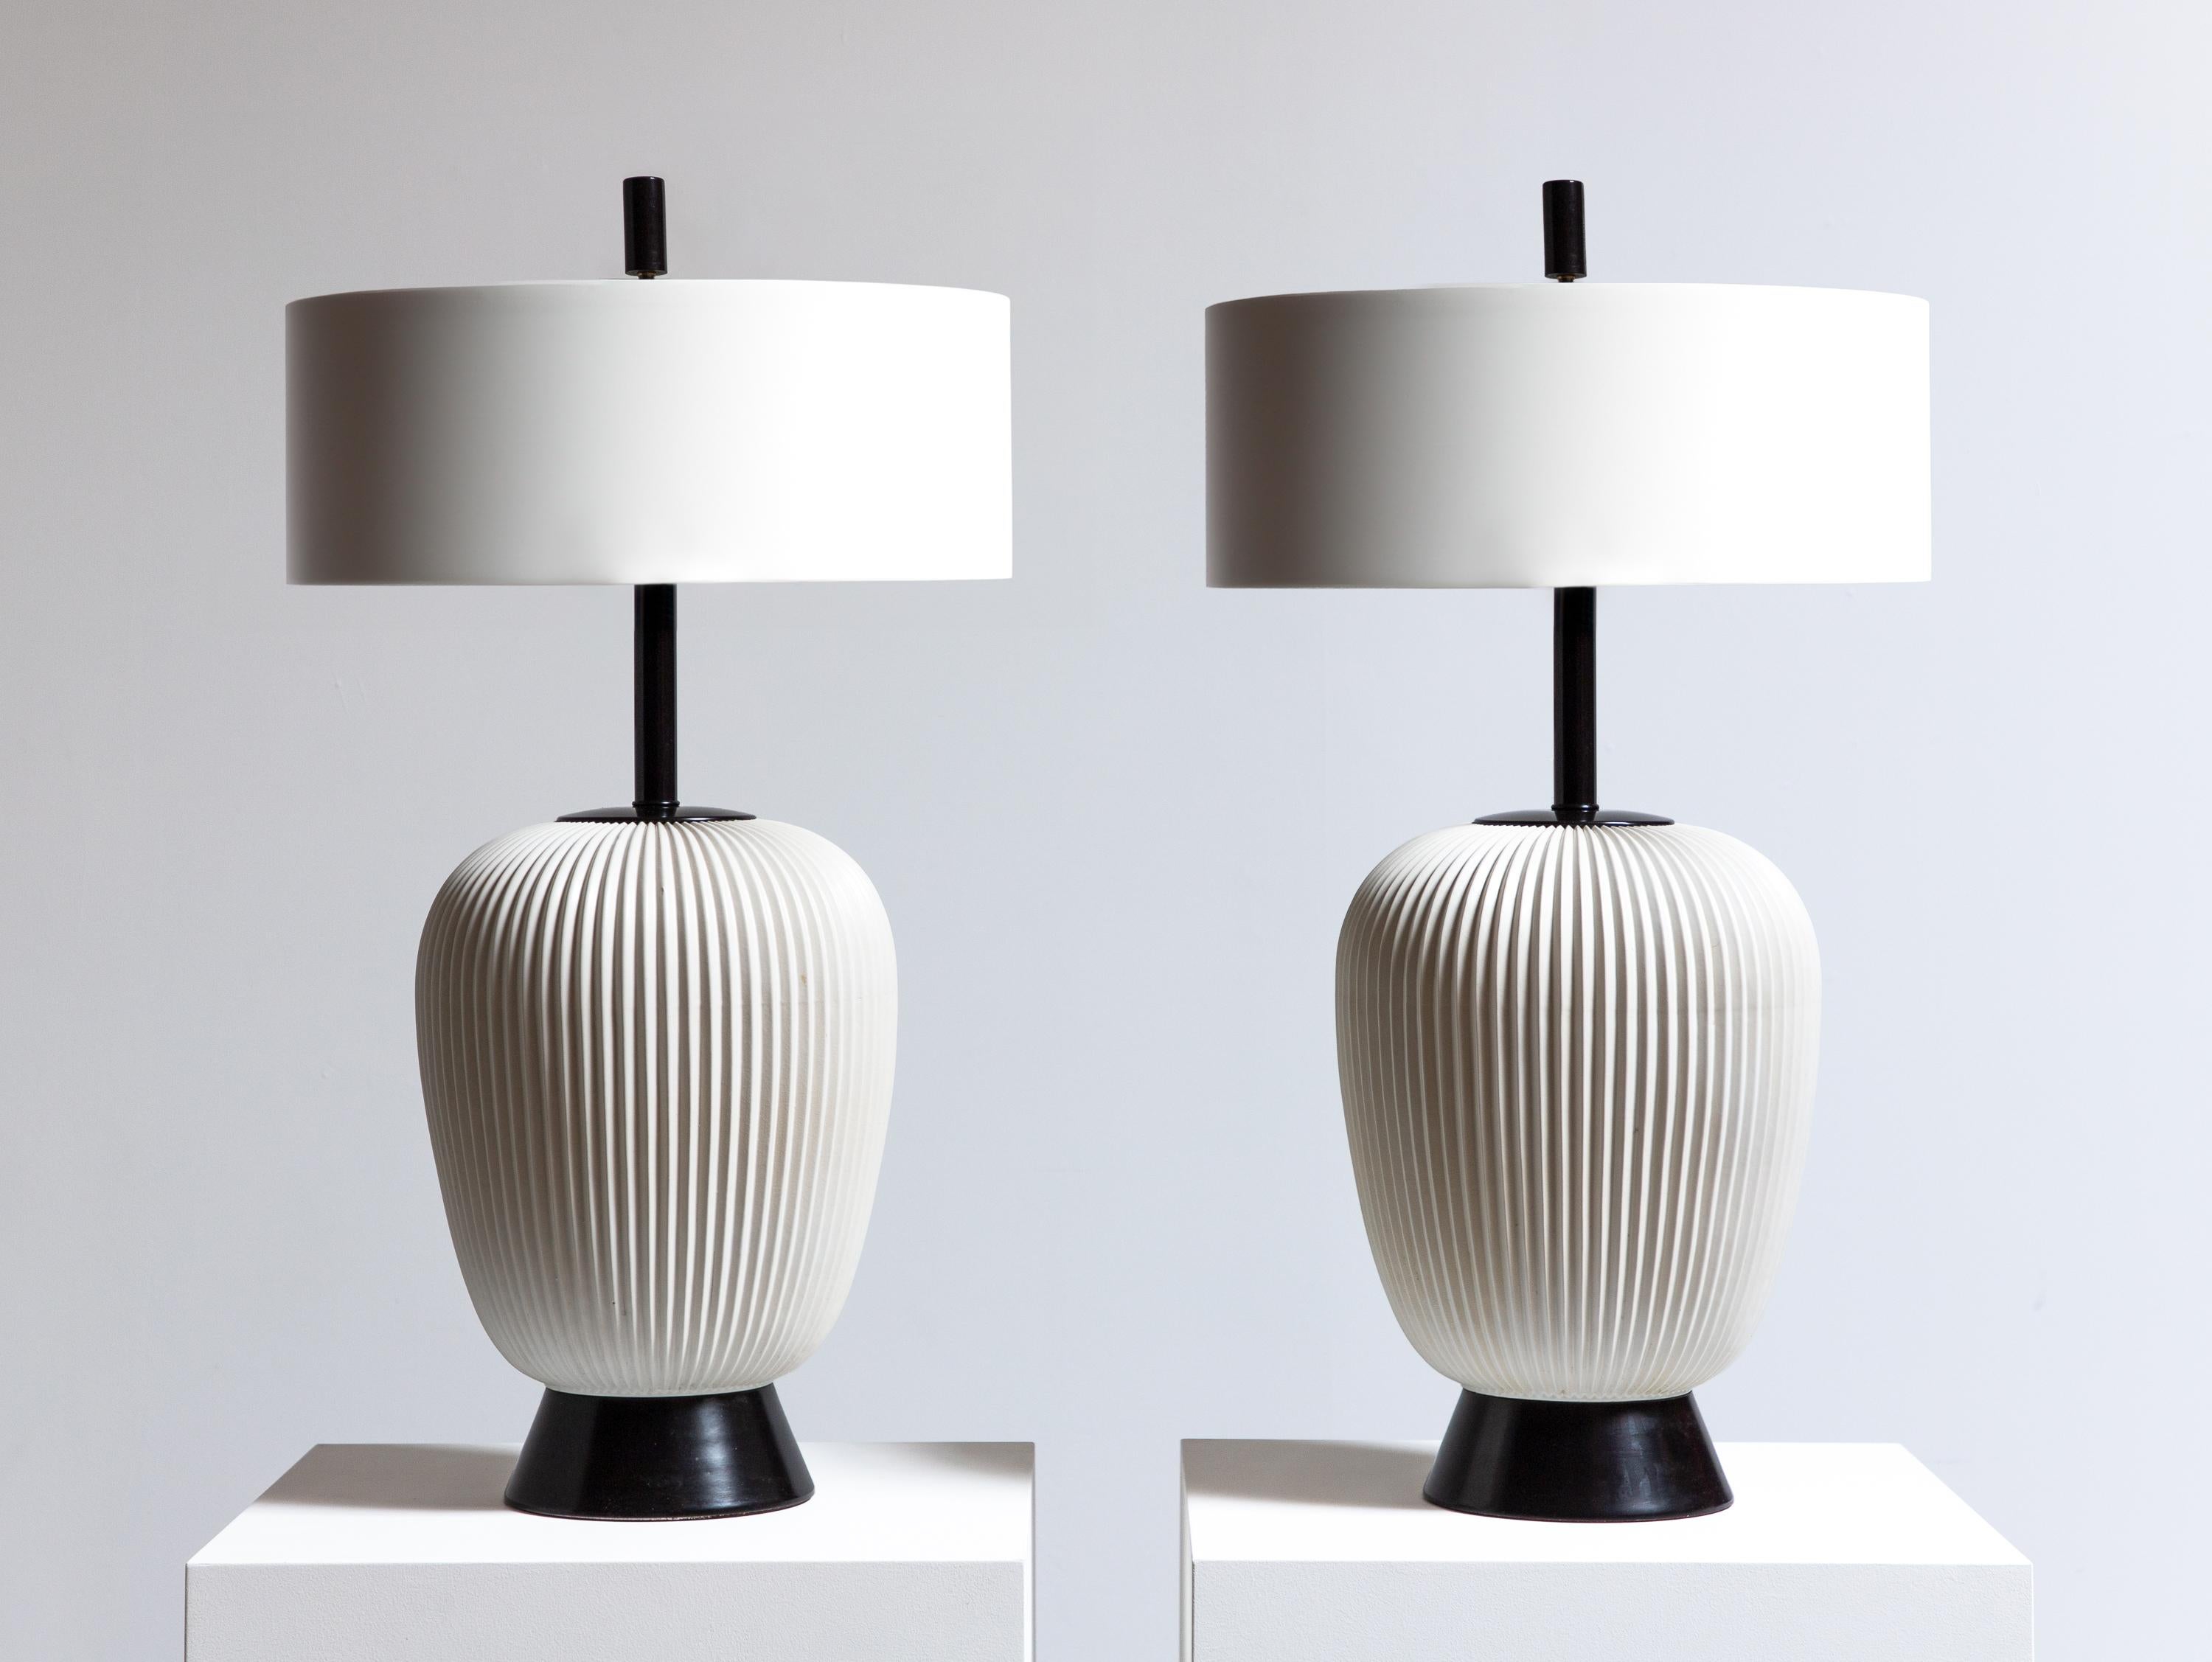 Paire de lampes de table en céramique, conçues par Gerald Thurston pour Lightolier. Exécuté dans un noir et blanc minimal, ce design frais présente un motif nervuré qui ajoute de la texture à ces lampes de grande taille. Finition en métal émaillé